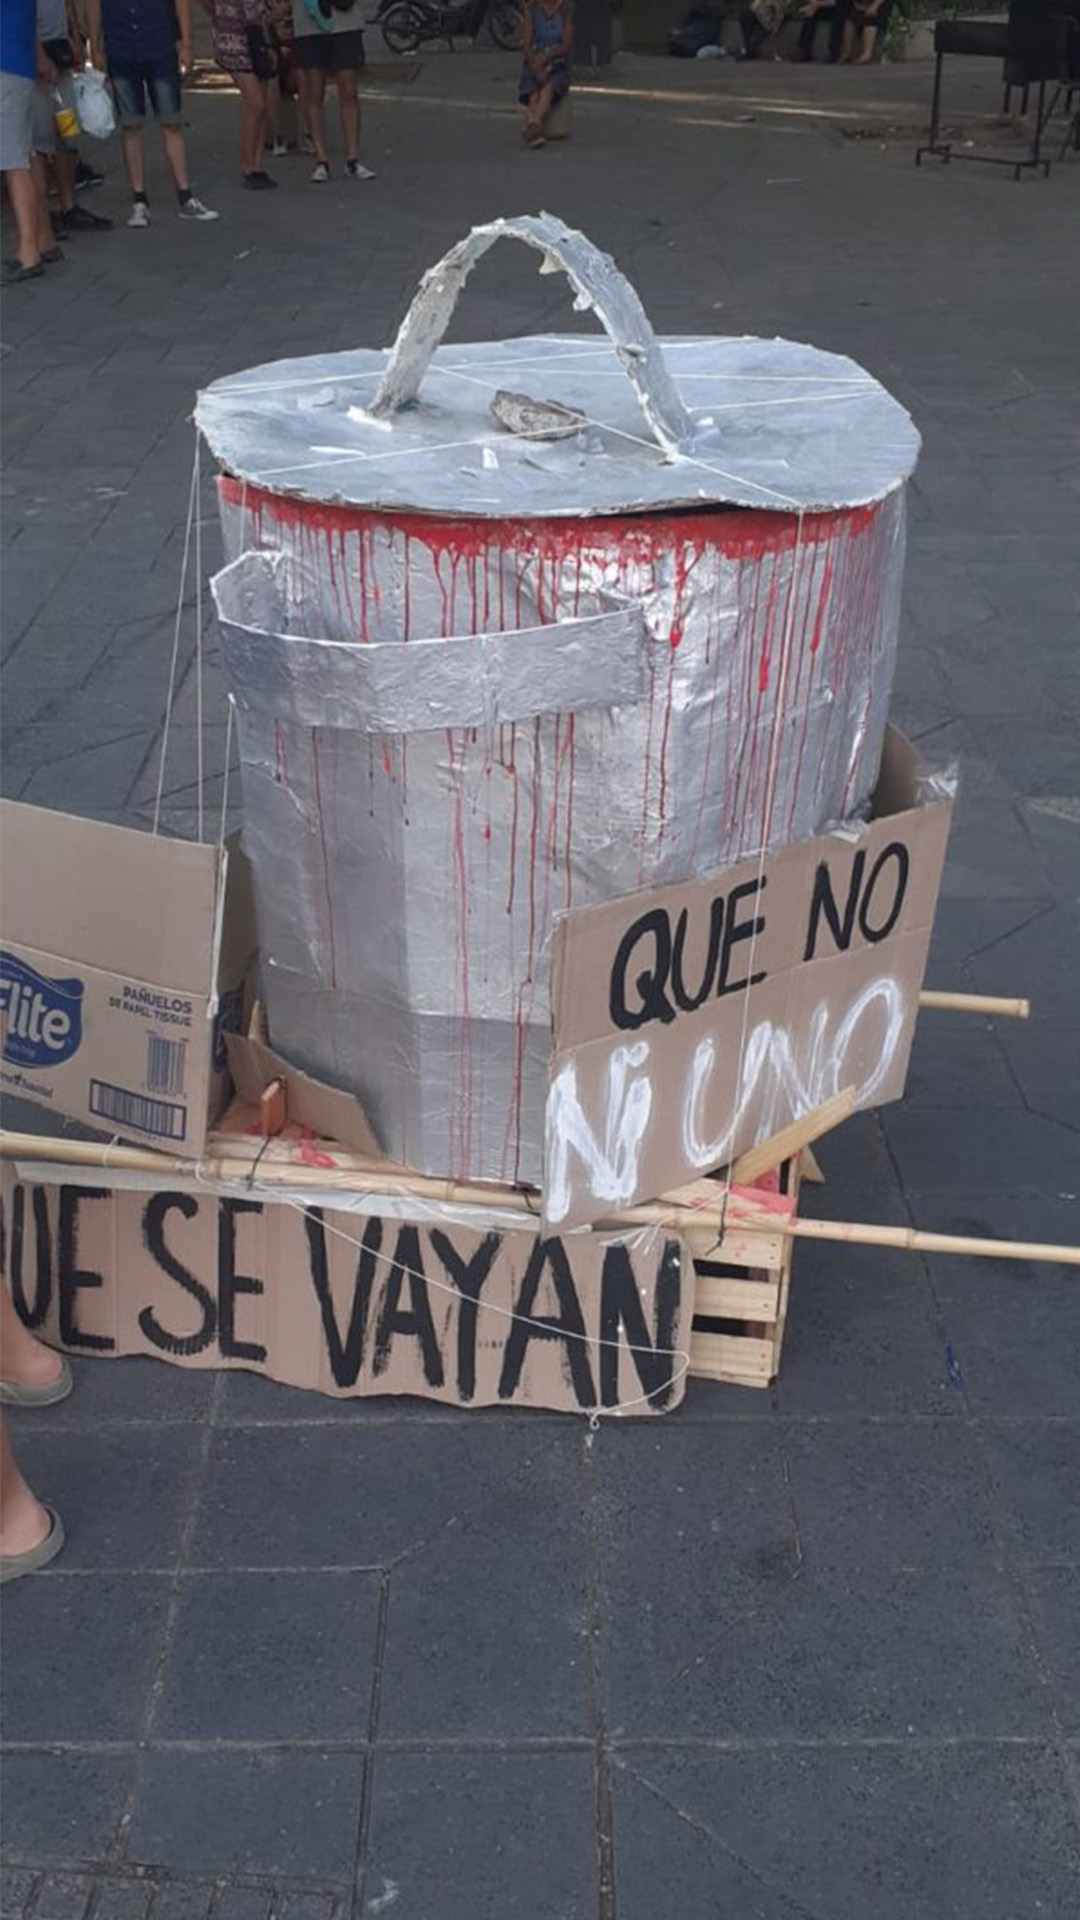 En el medio de la calle una cacerola echa de cartón, manchada de pintura roja que simula sangre. Sobre el costado de la misma se puede leer un cartel que dice que se vayan.